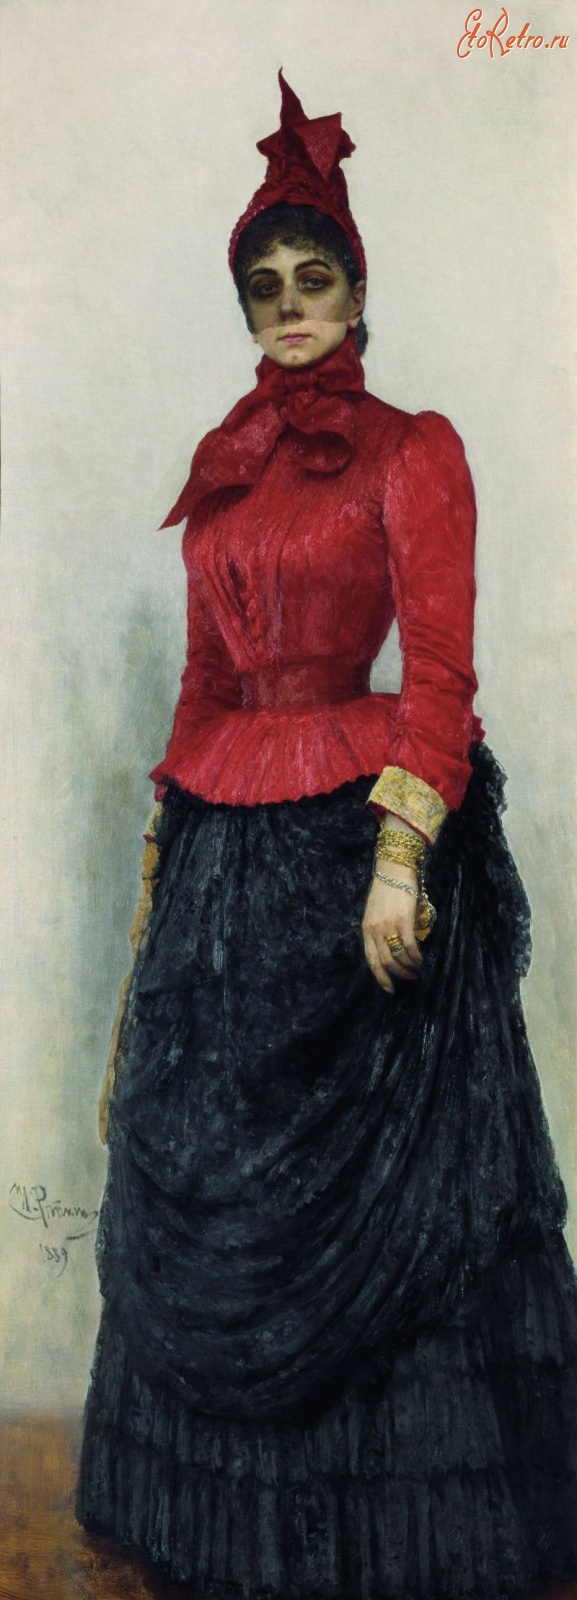 Картины - И.Е. Репин Портрет баронессы В. И. Икскуль фон Гильденбандт (1889), Государственная Третьяковская галерея.